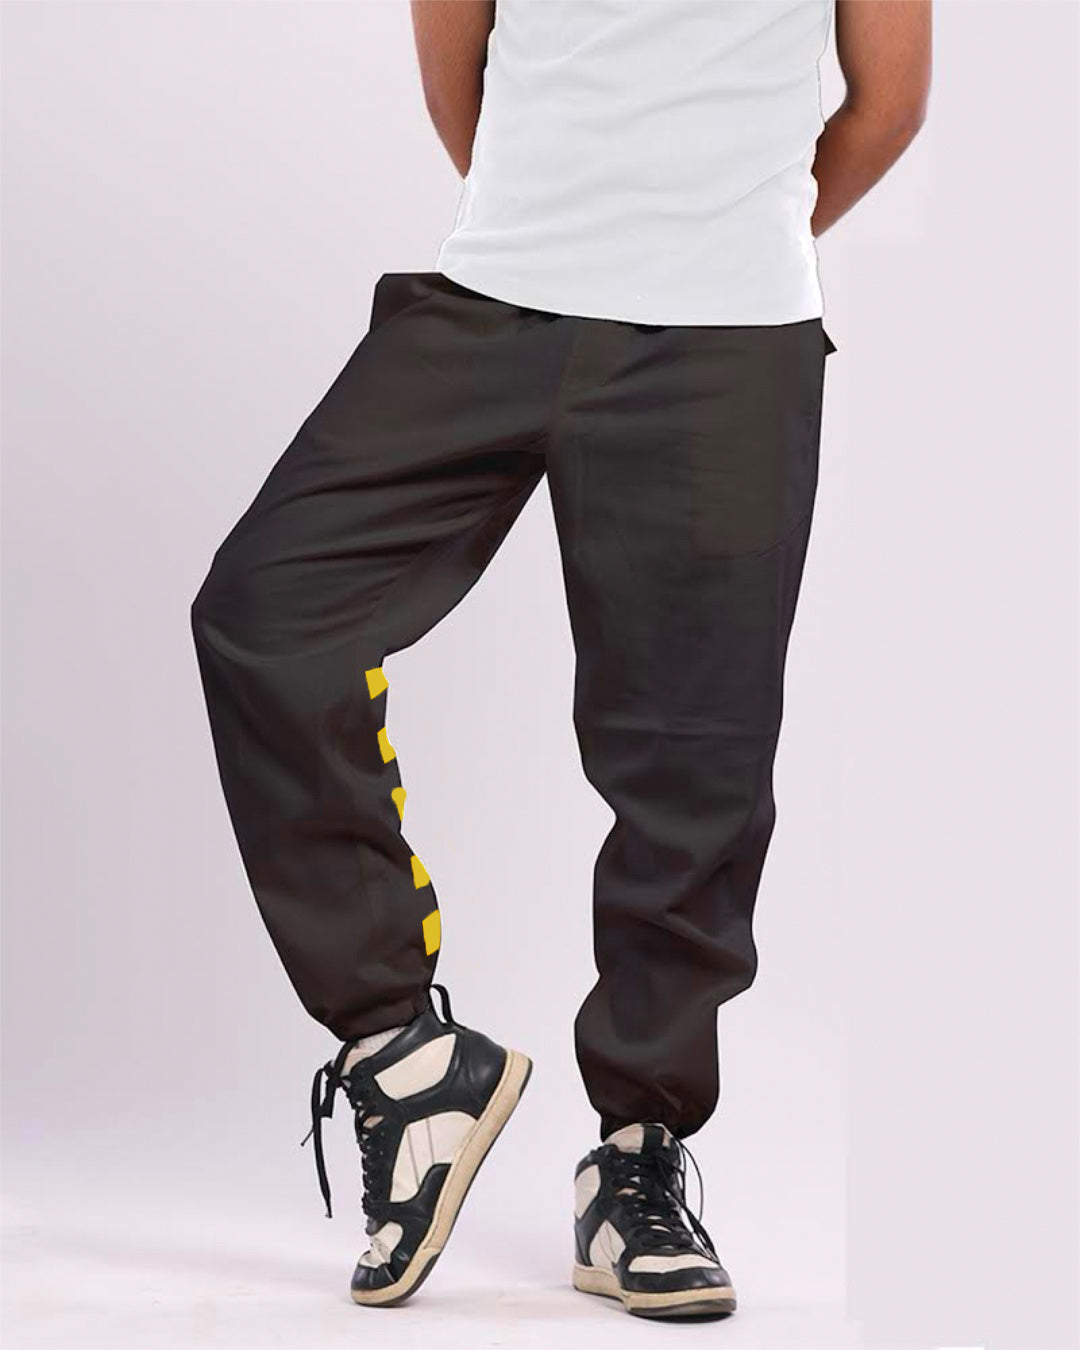 Men's Black Cargo Pants - Yellow Strip